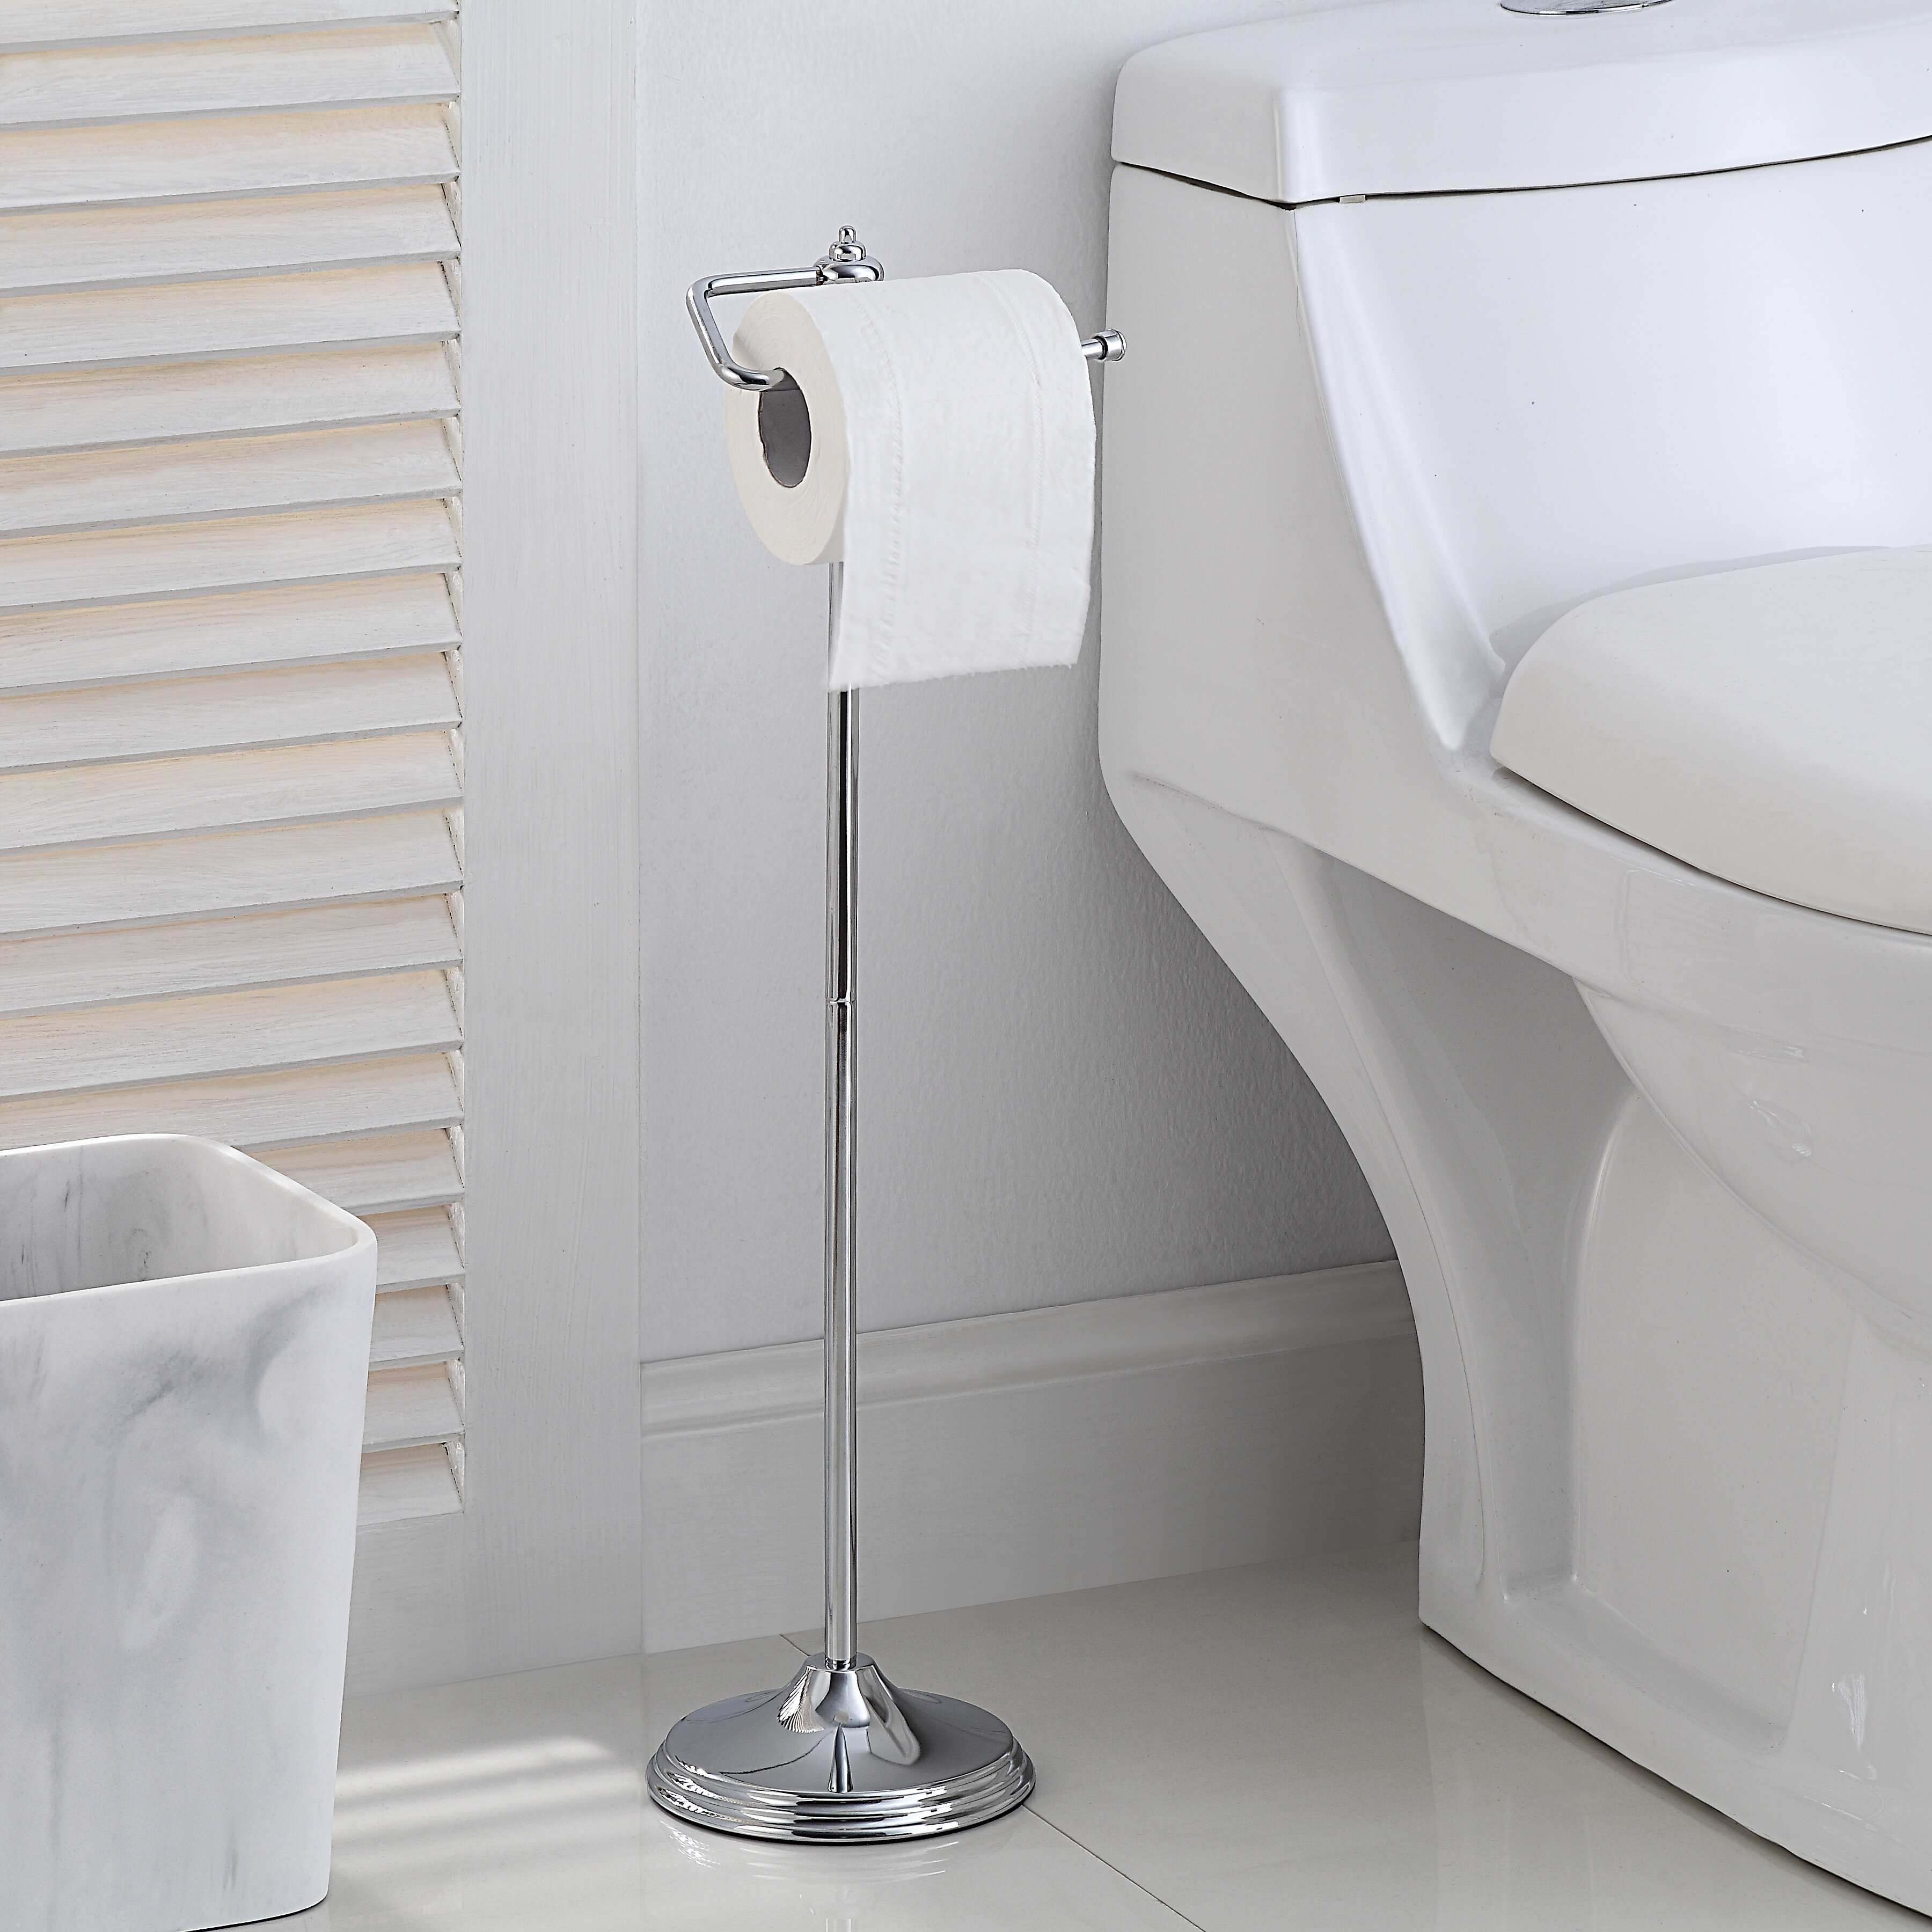 Free Standing Chrome Bathroom Toilet Paper Roll Holder Dispenser 3 Roll Storage